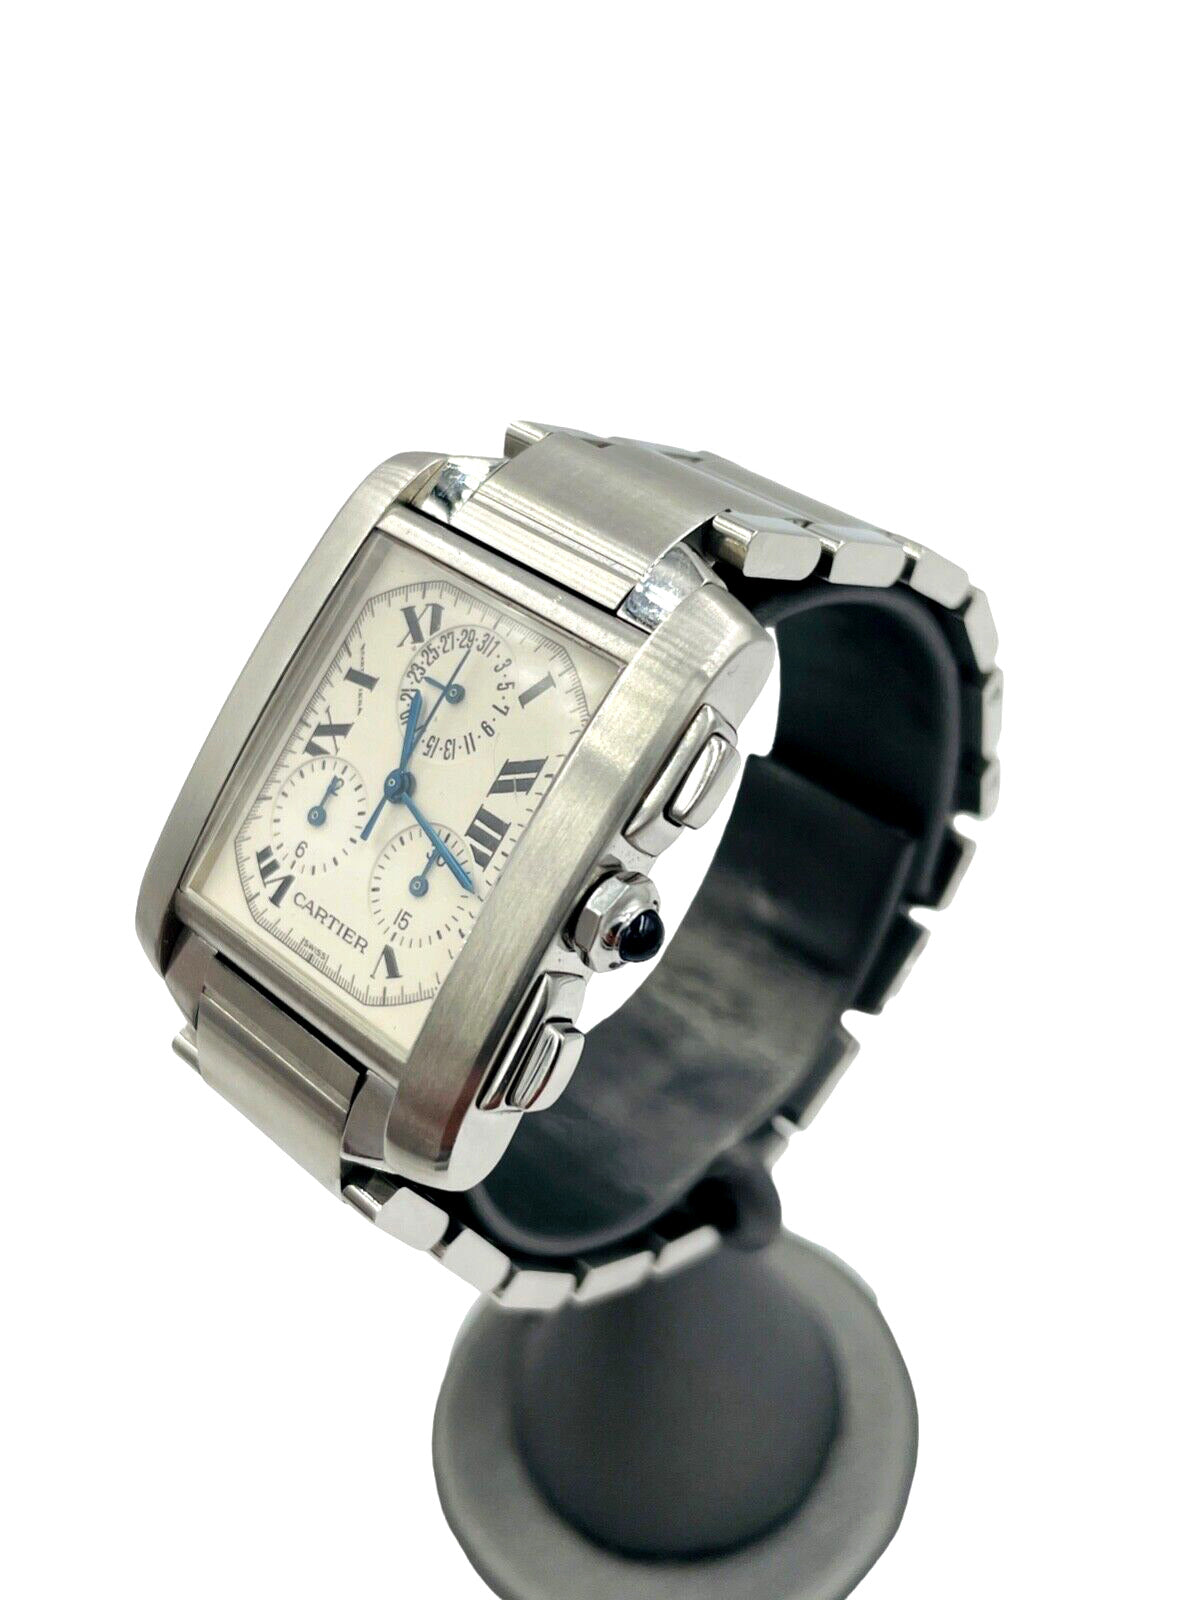 Cartier 2303 Tank Francaise Chronoflex Quartz Men's Large Watch + Serviced